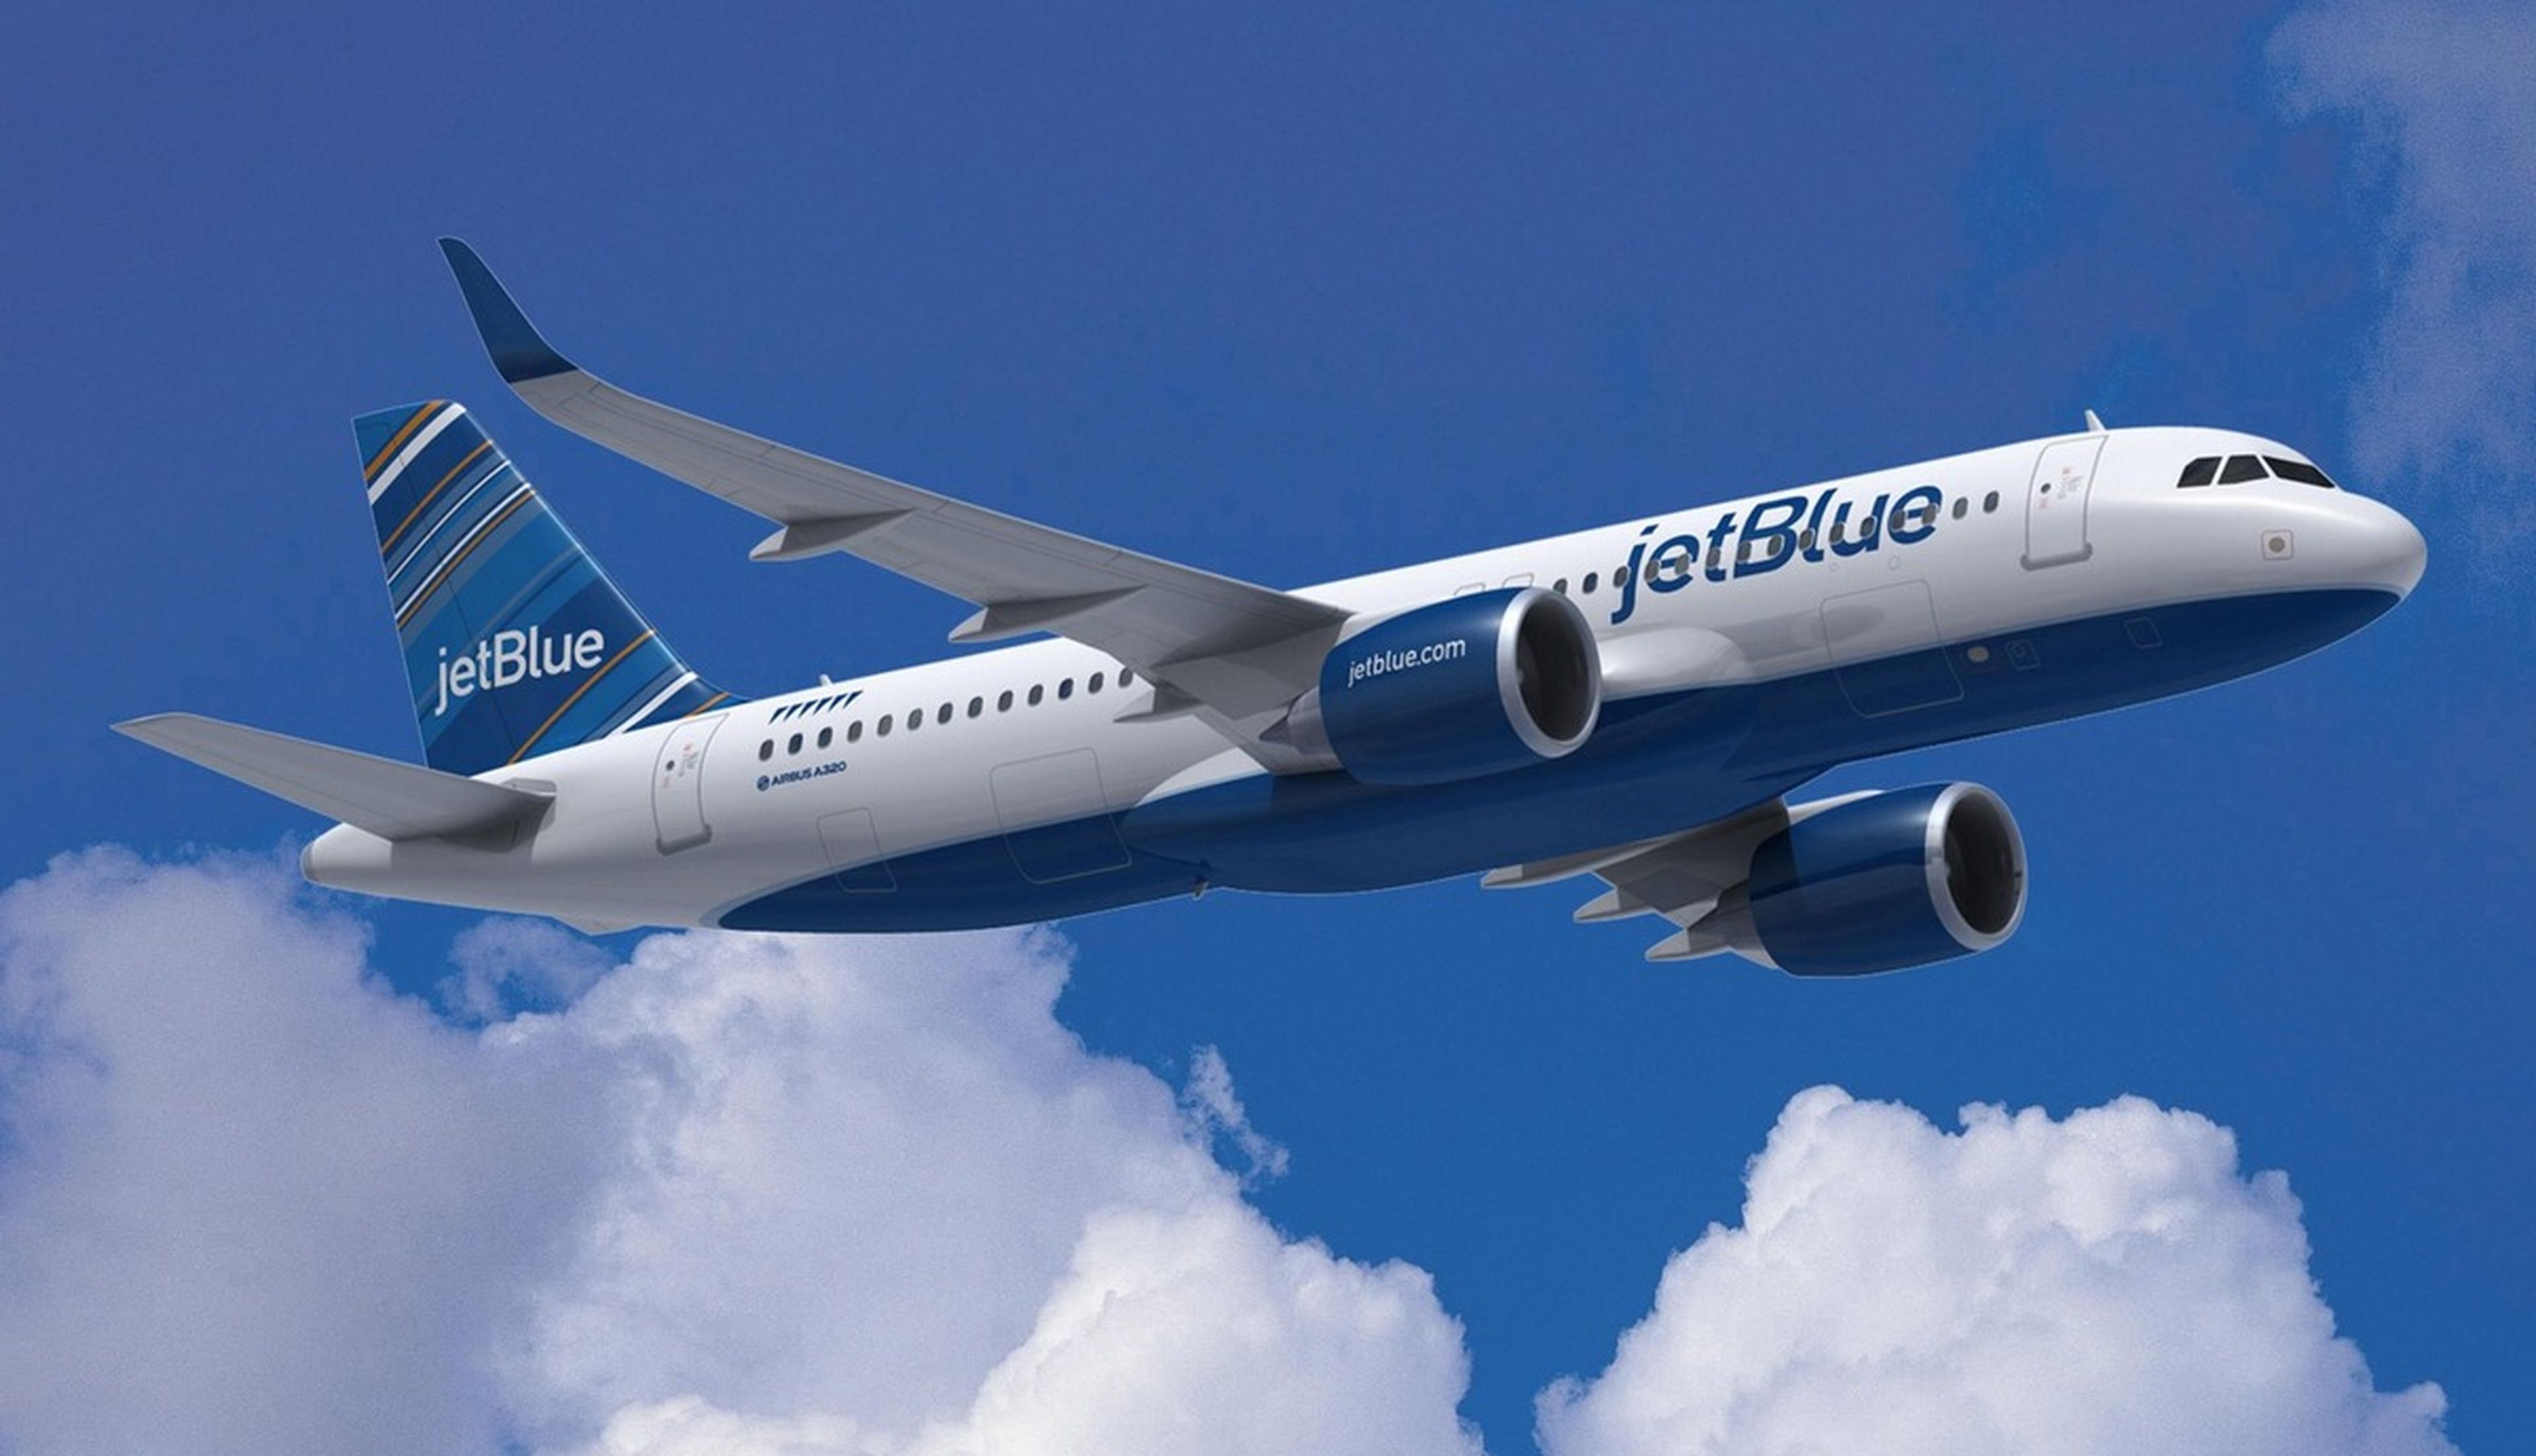 La aerolínea JetBlue ofrece vuelos gratis durante un año si borras tus fotos de Instagram